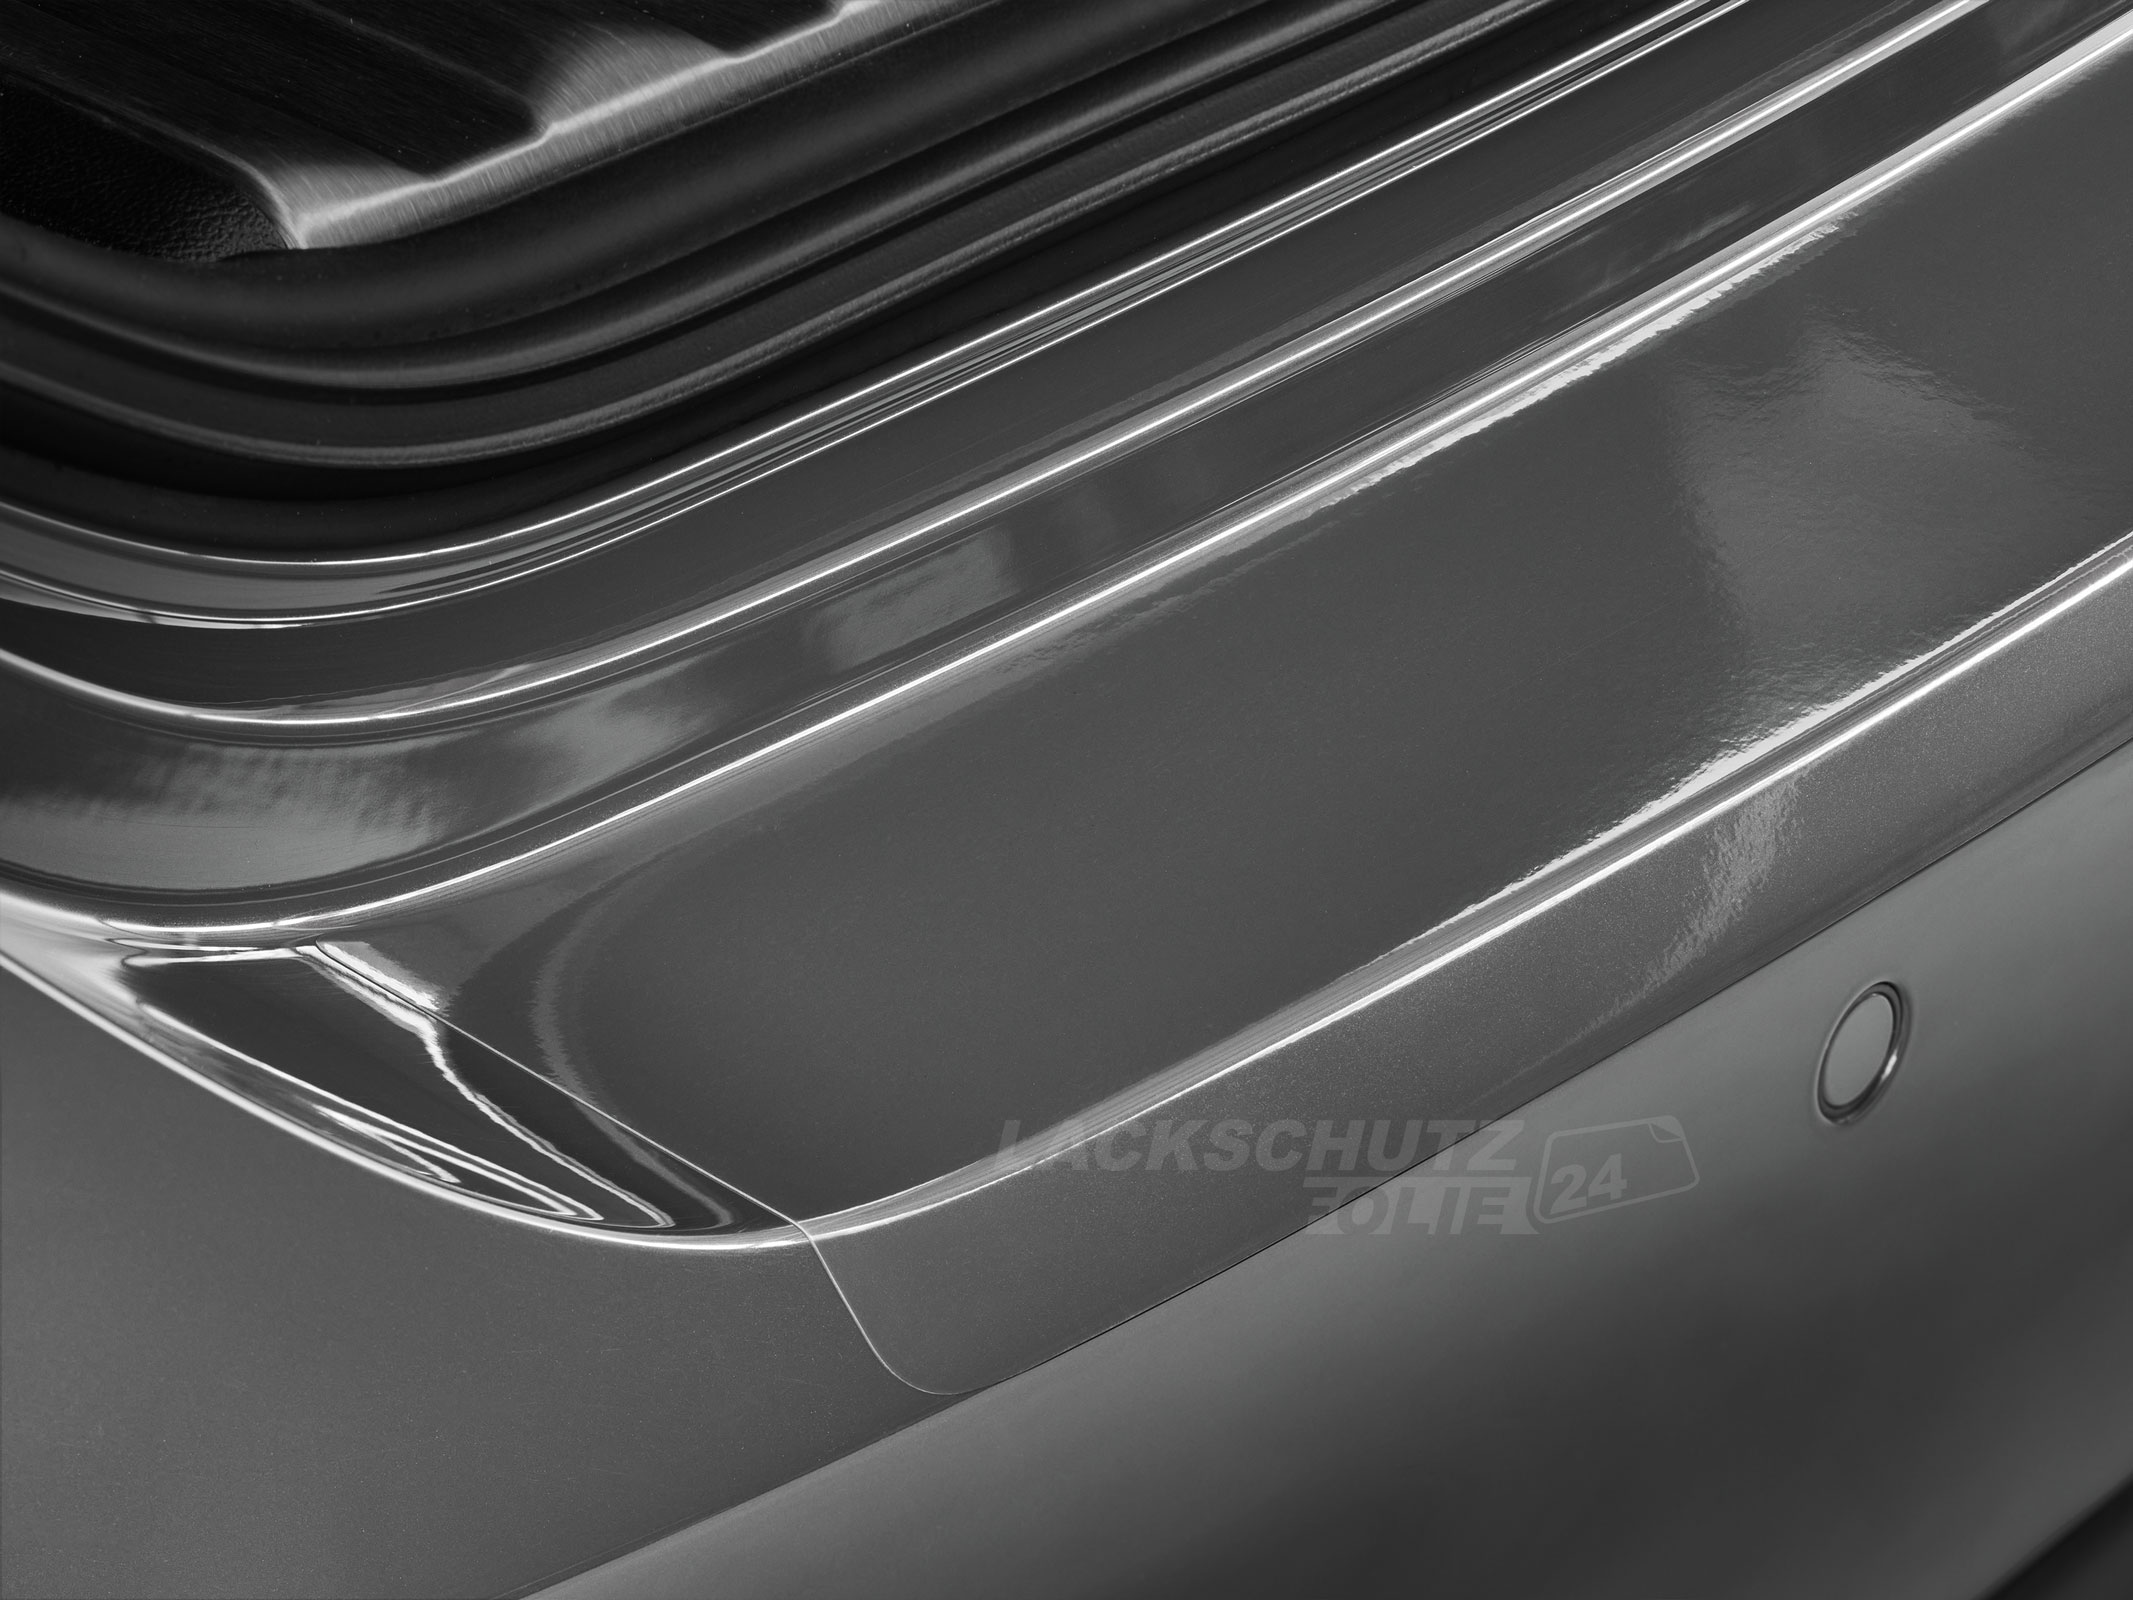 Ladekantenschutzfolie - Transparent Glatt Hochglänzend 240 µm stark für Opel Ampera BJ 2012-2016